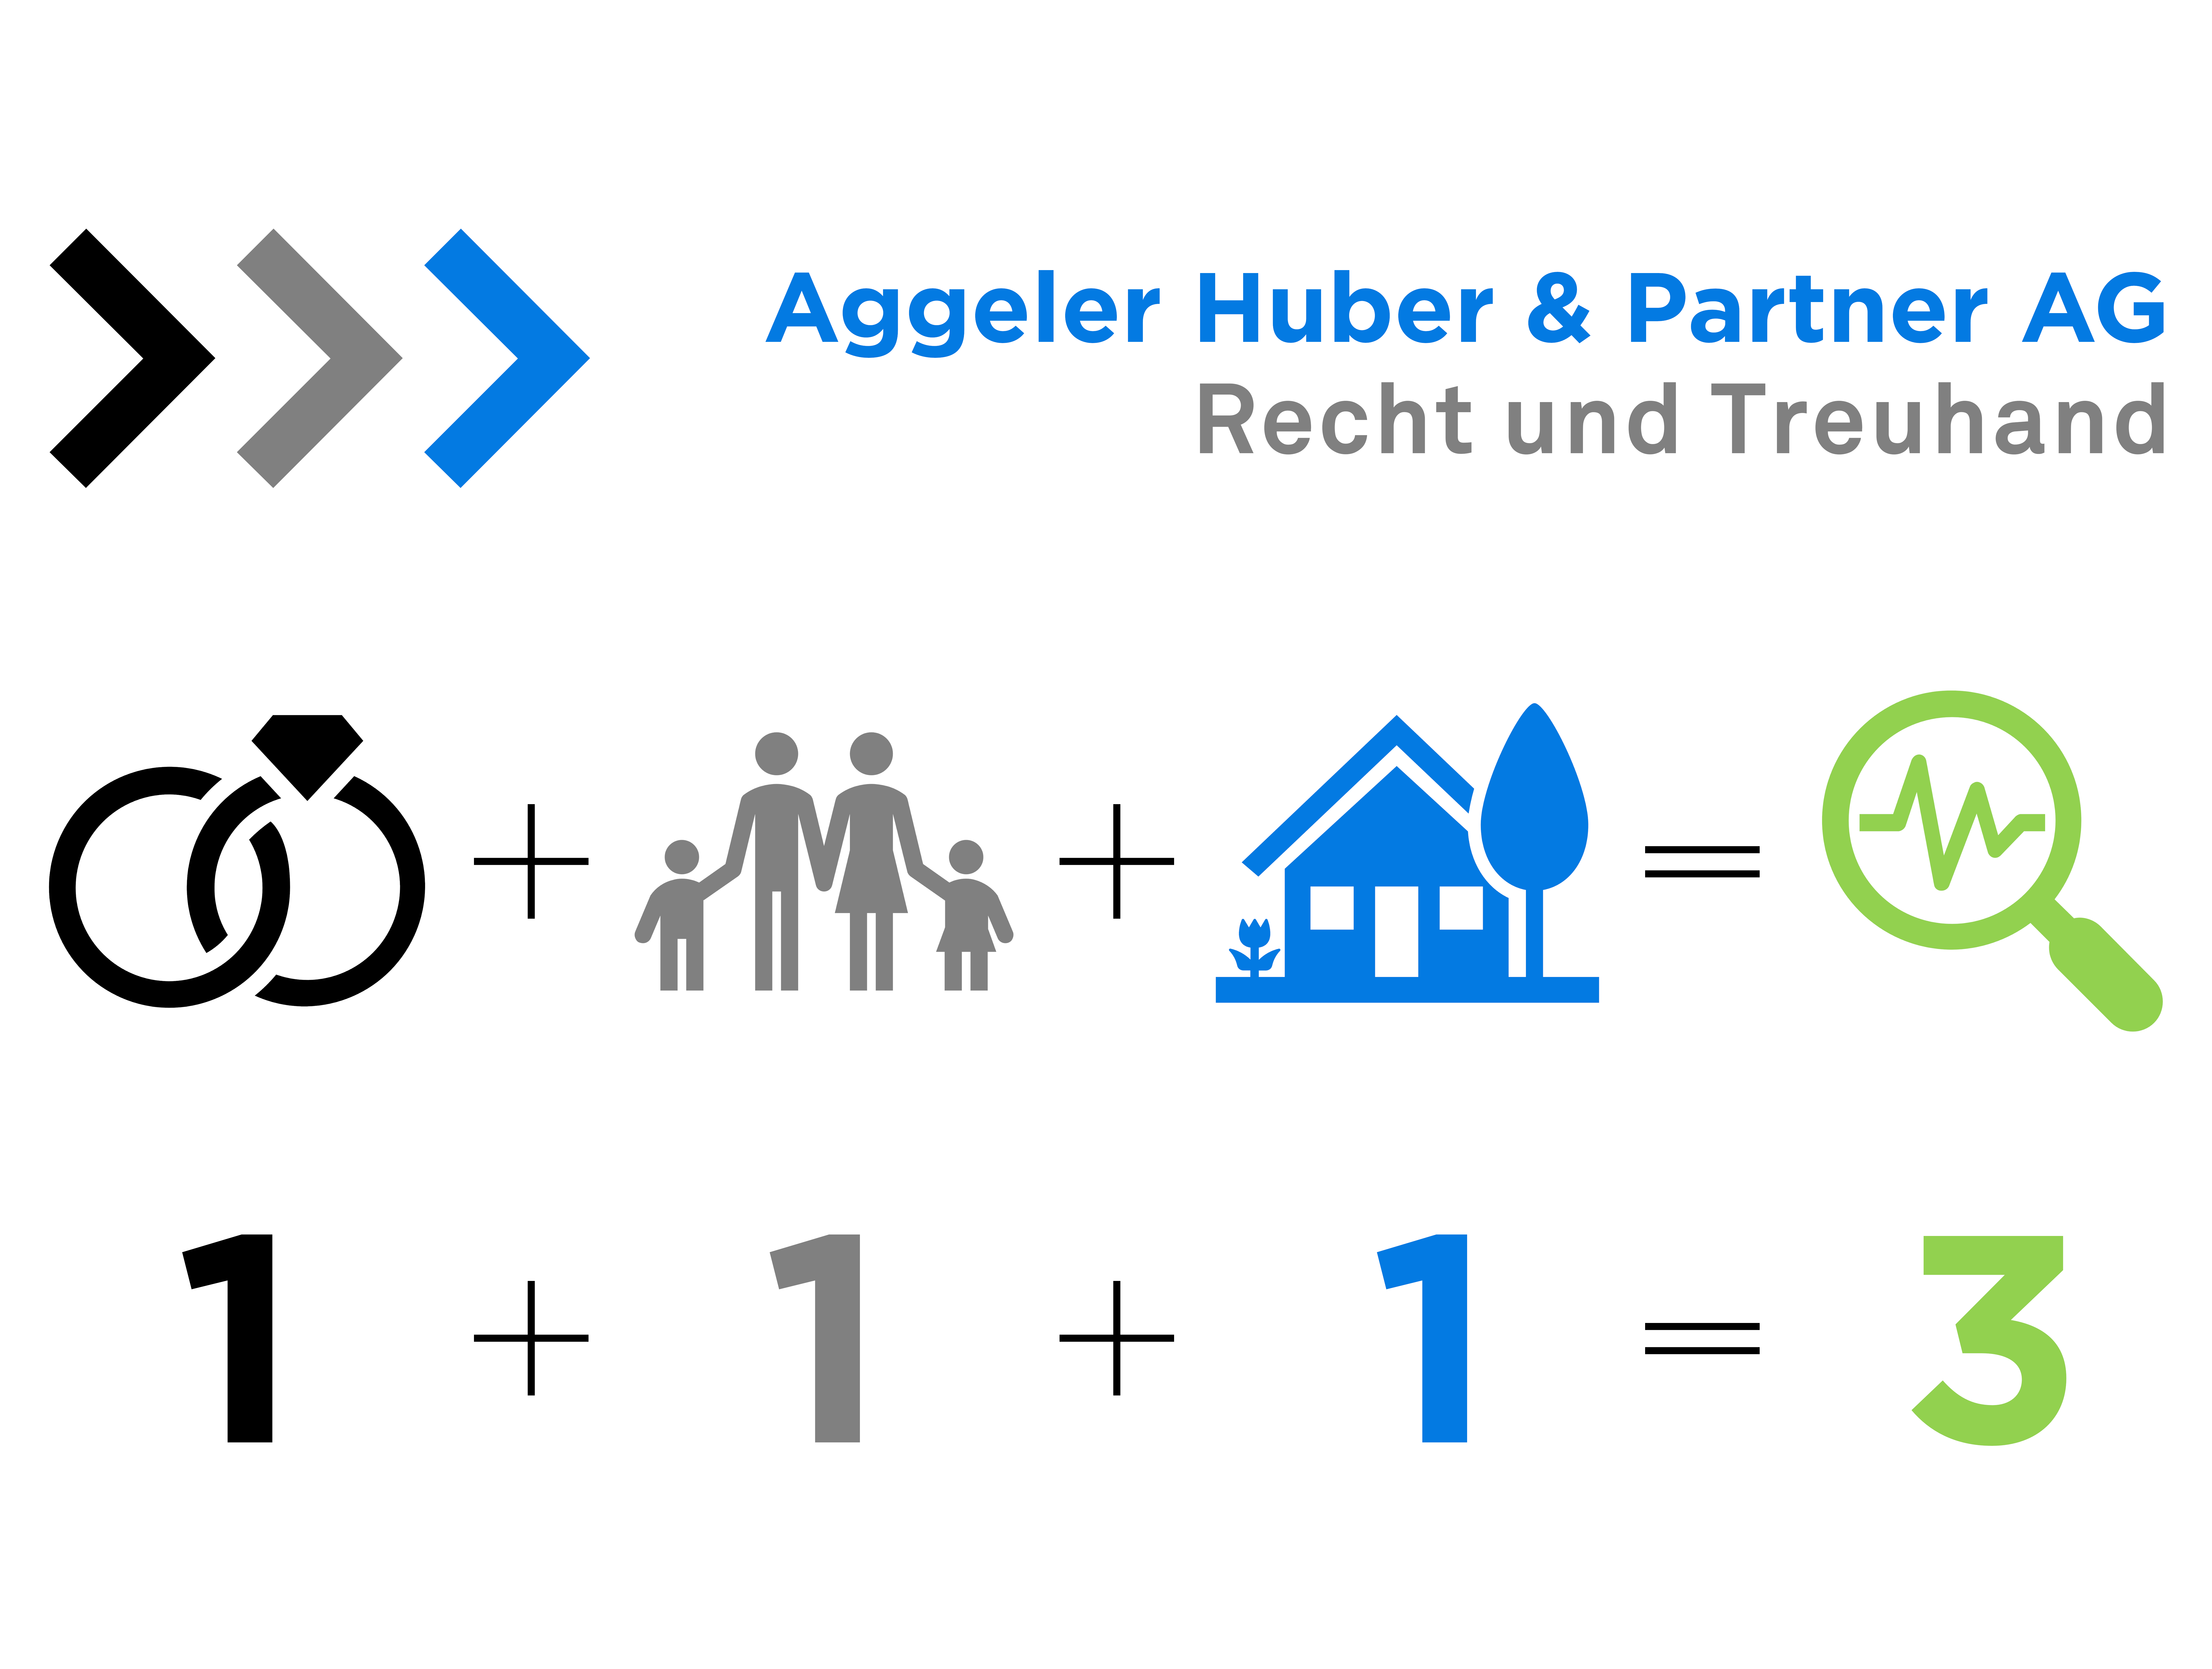 Aggeler Huber & Partner AG